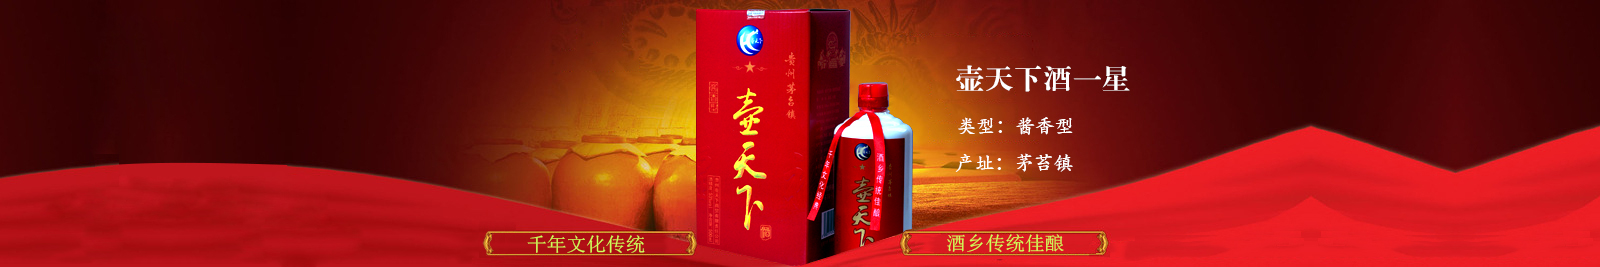 贵州白酒批发市场浅谈白酒行业供给侧改革成效明显